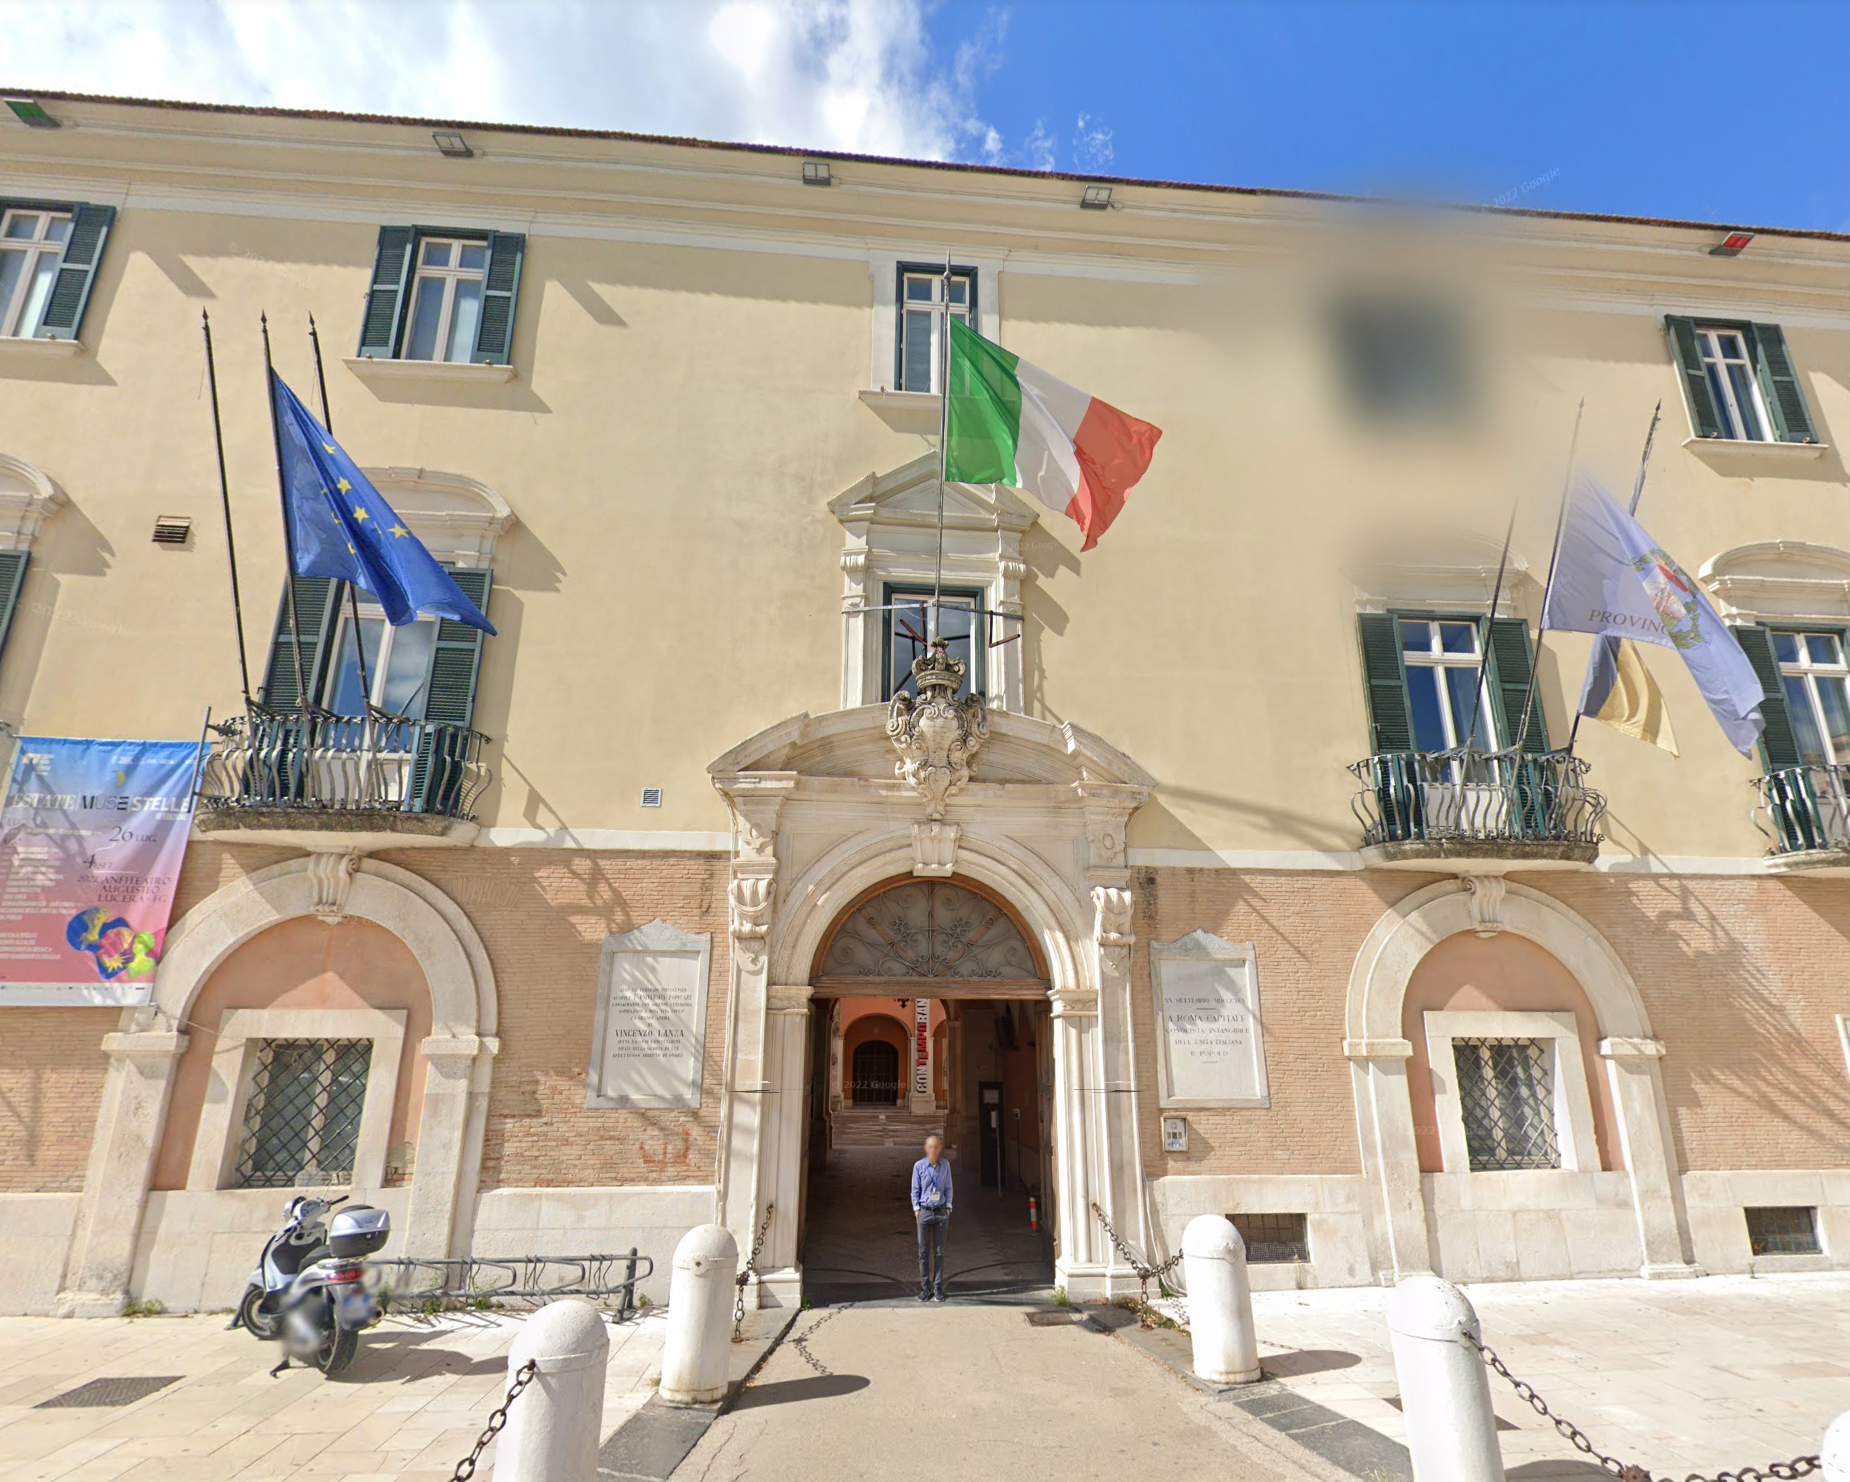 Palazzo Dogana by Google Earth